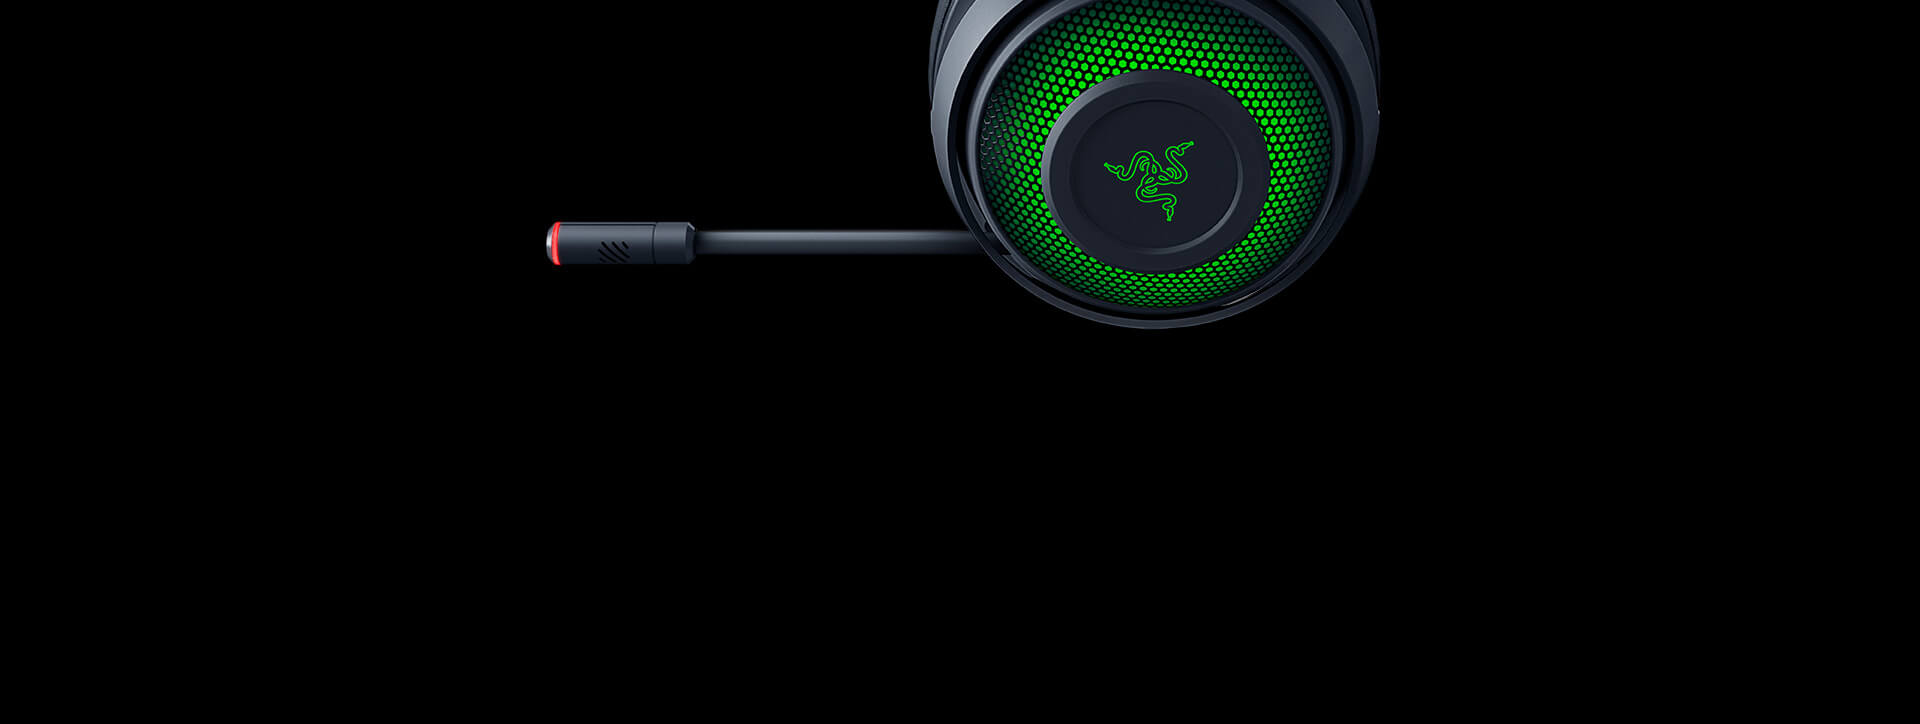 Tai nghe Razer Kraken Ultimate ANC Microphone Black (RZ04-03180100-R3M1) trang bị công nghệ khử tiếng ồn độc quyền cho micro